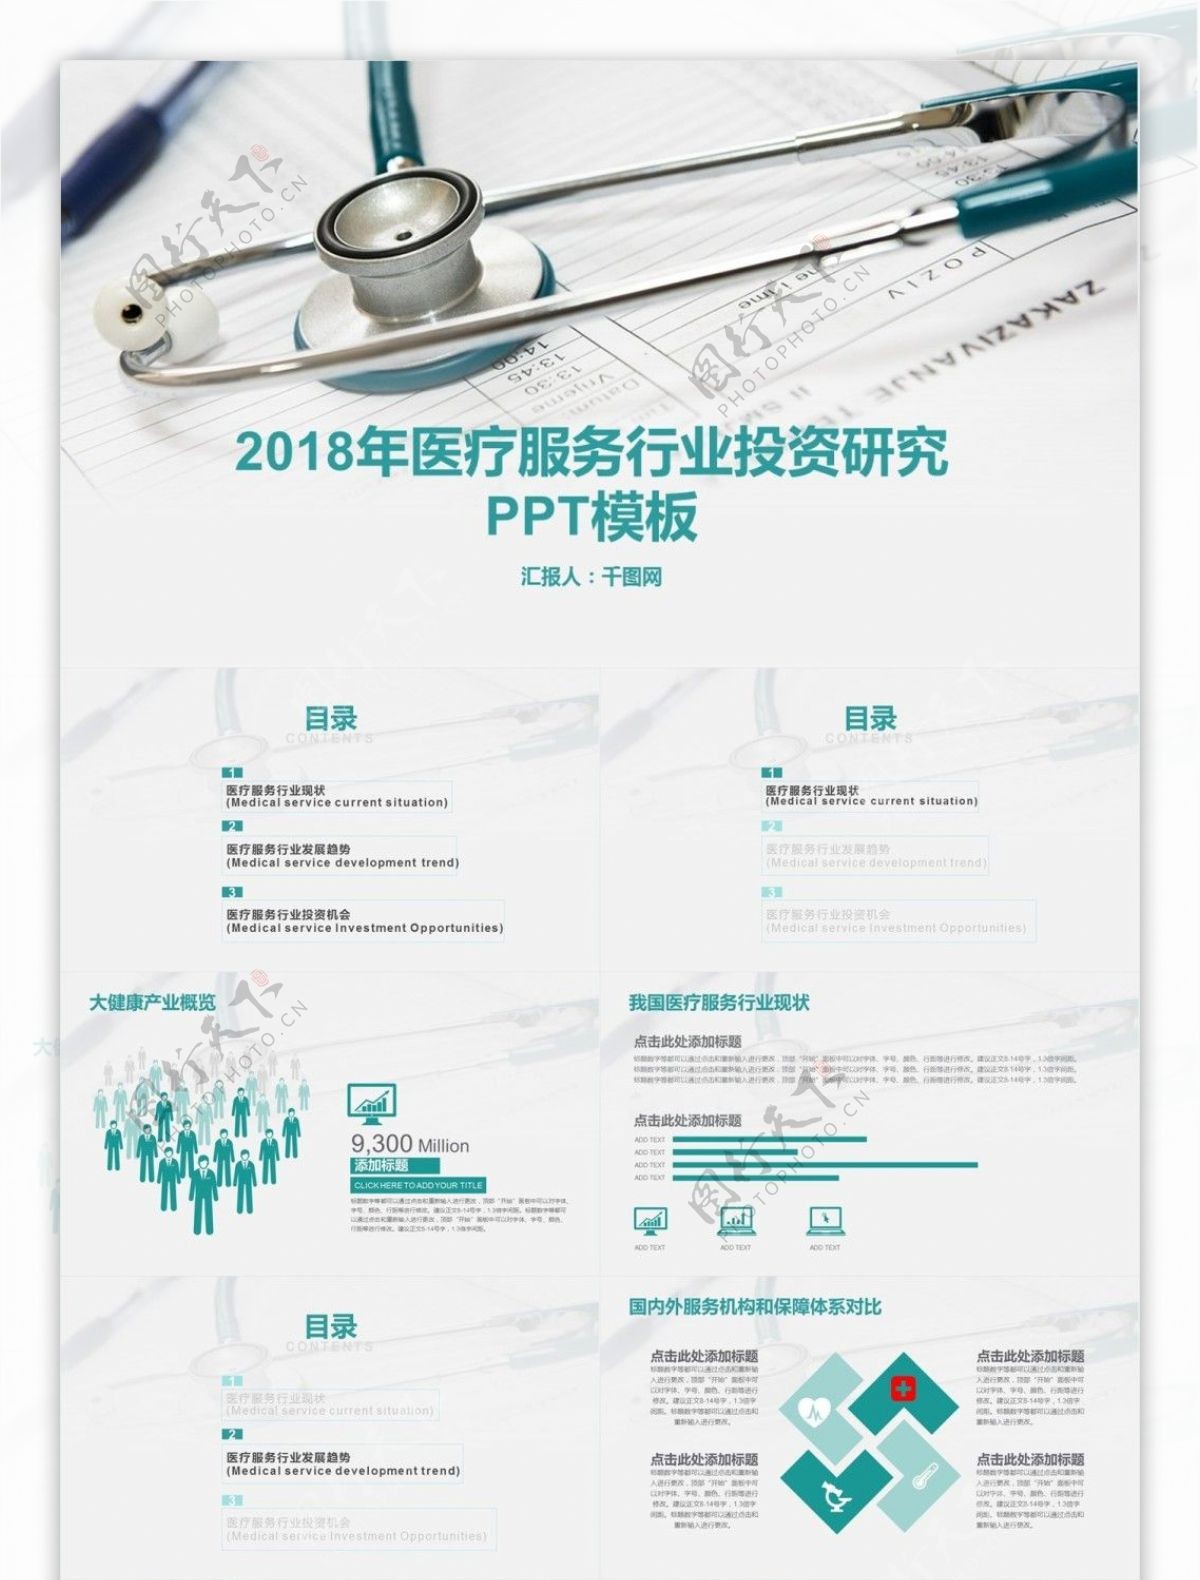 2018医疗服务行业投资研究PPT模版